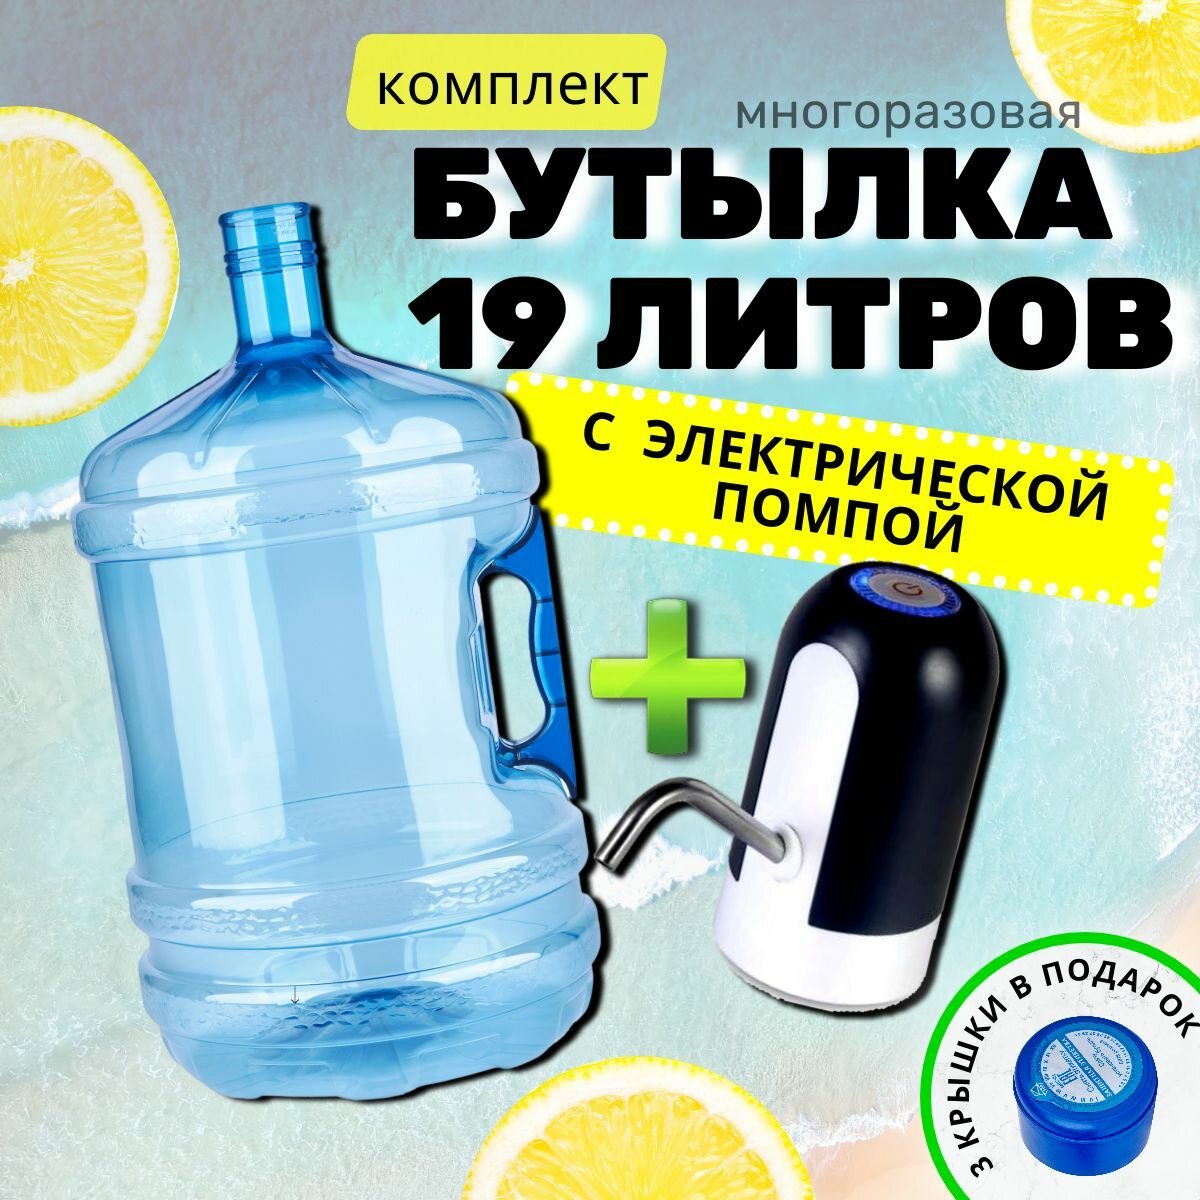 Бутыль для воды многоразовая 19 литров с электрической помпой